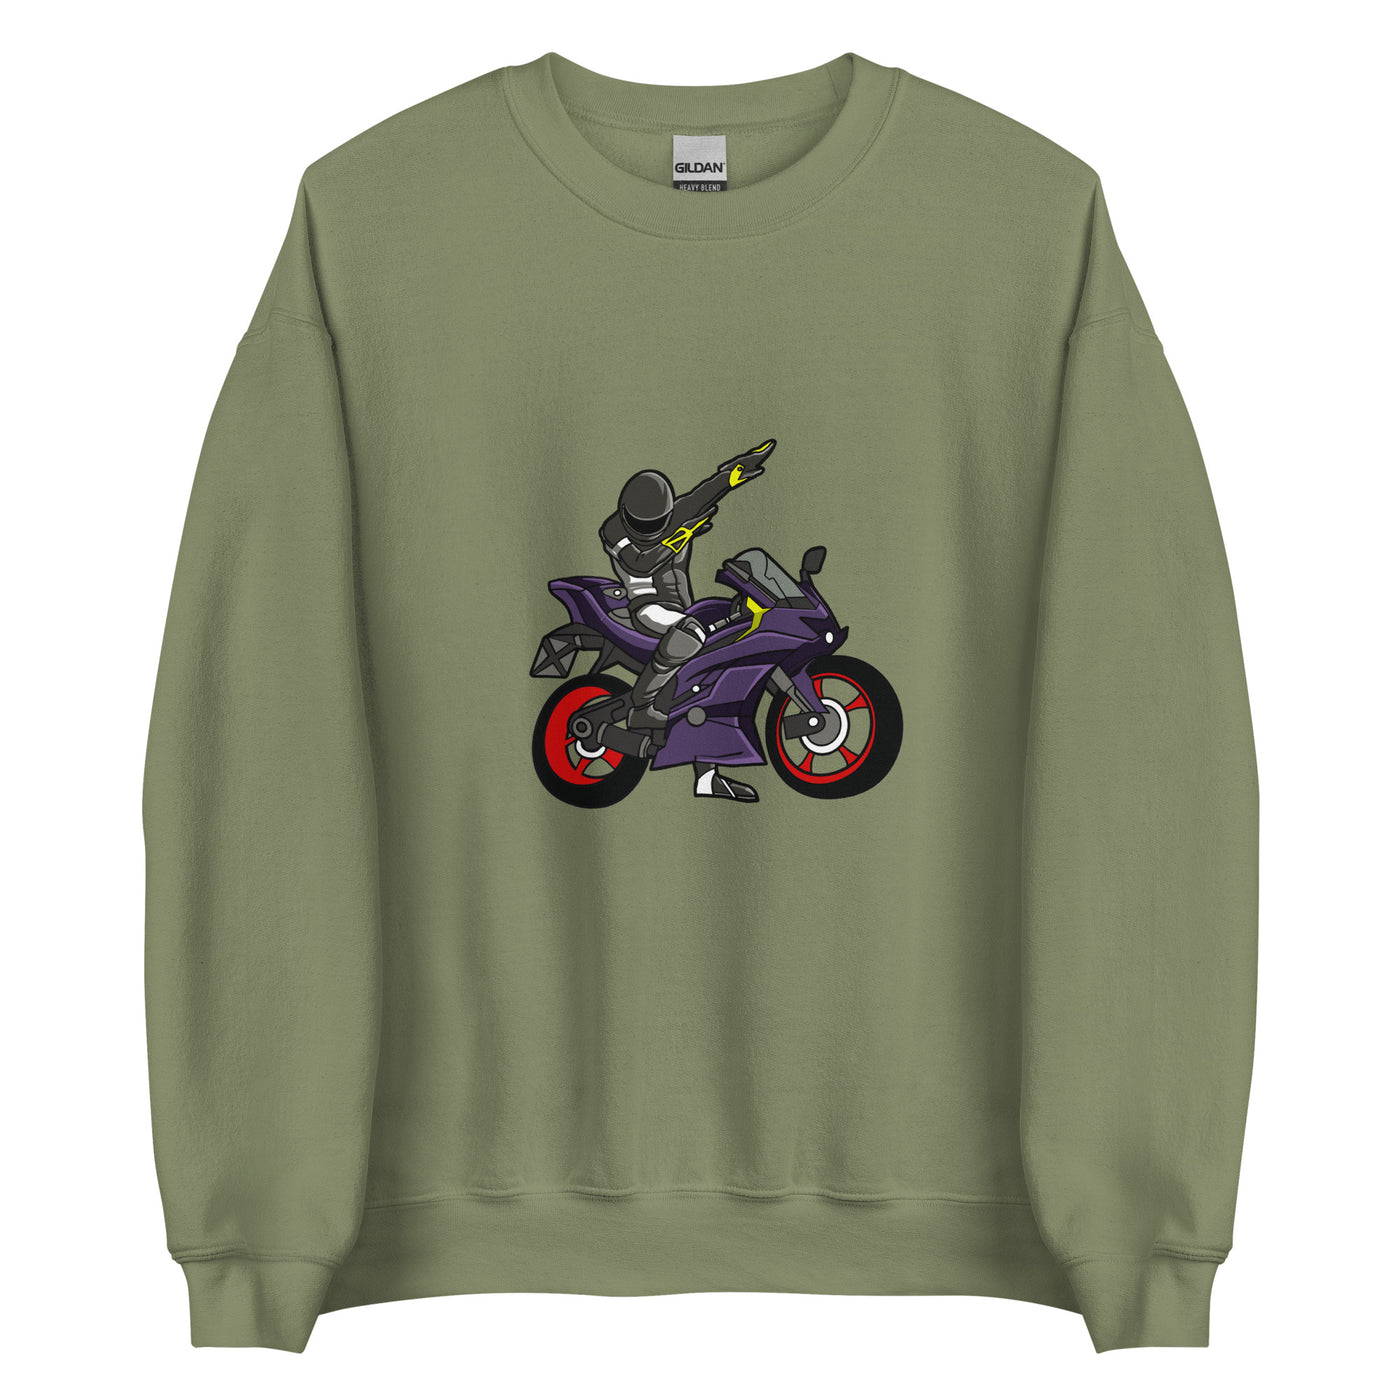 BIG BIKE MOTROCYCLYE DABBING Unisex Sweatshirt